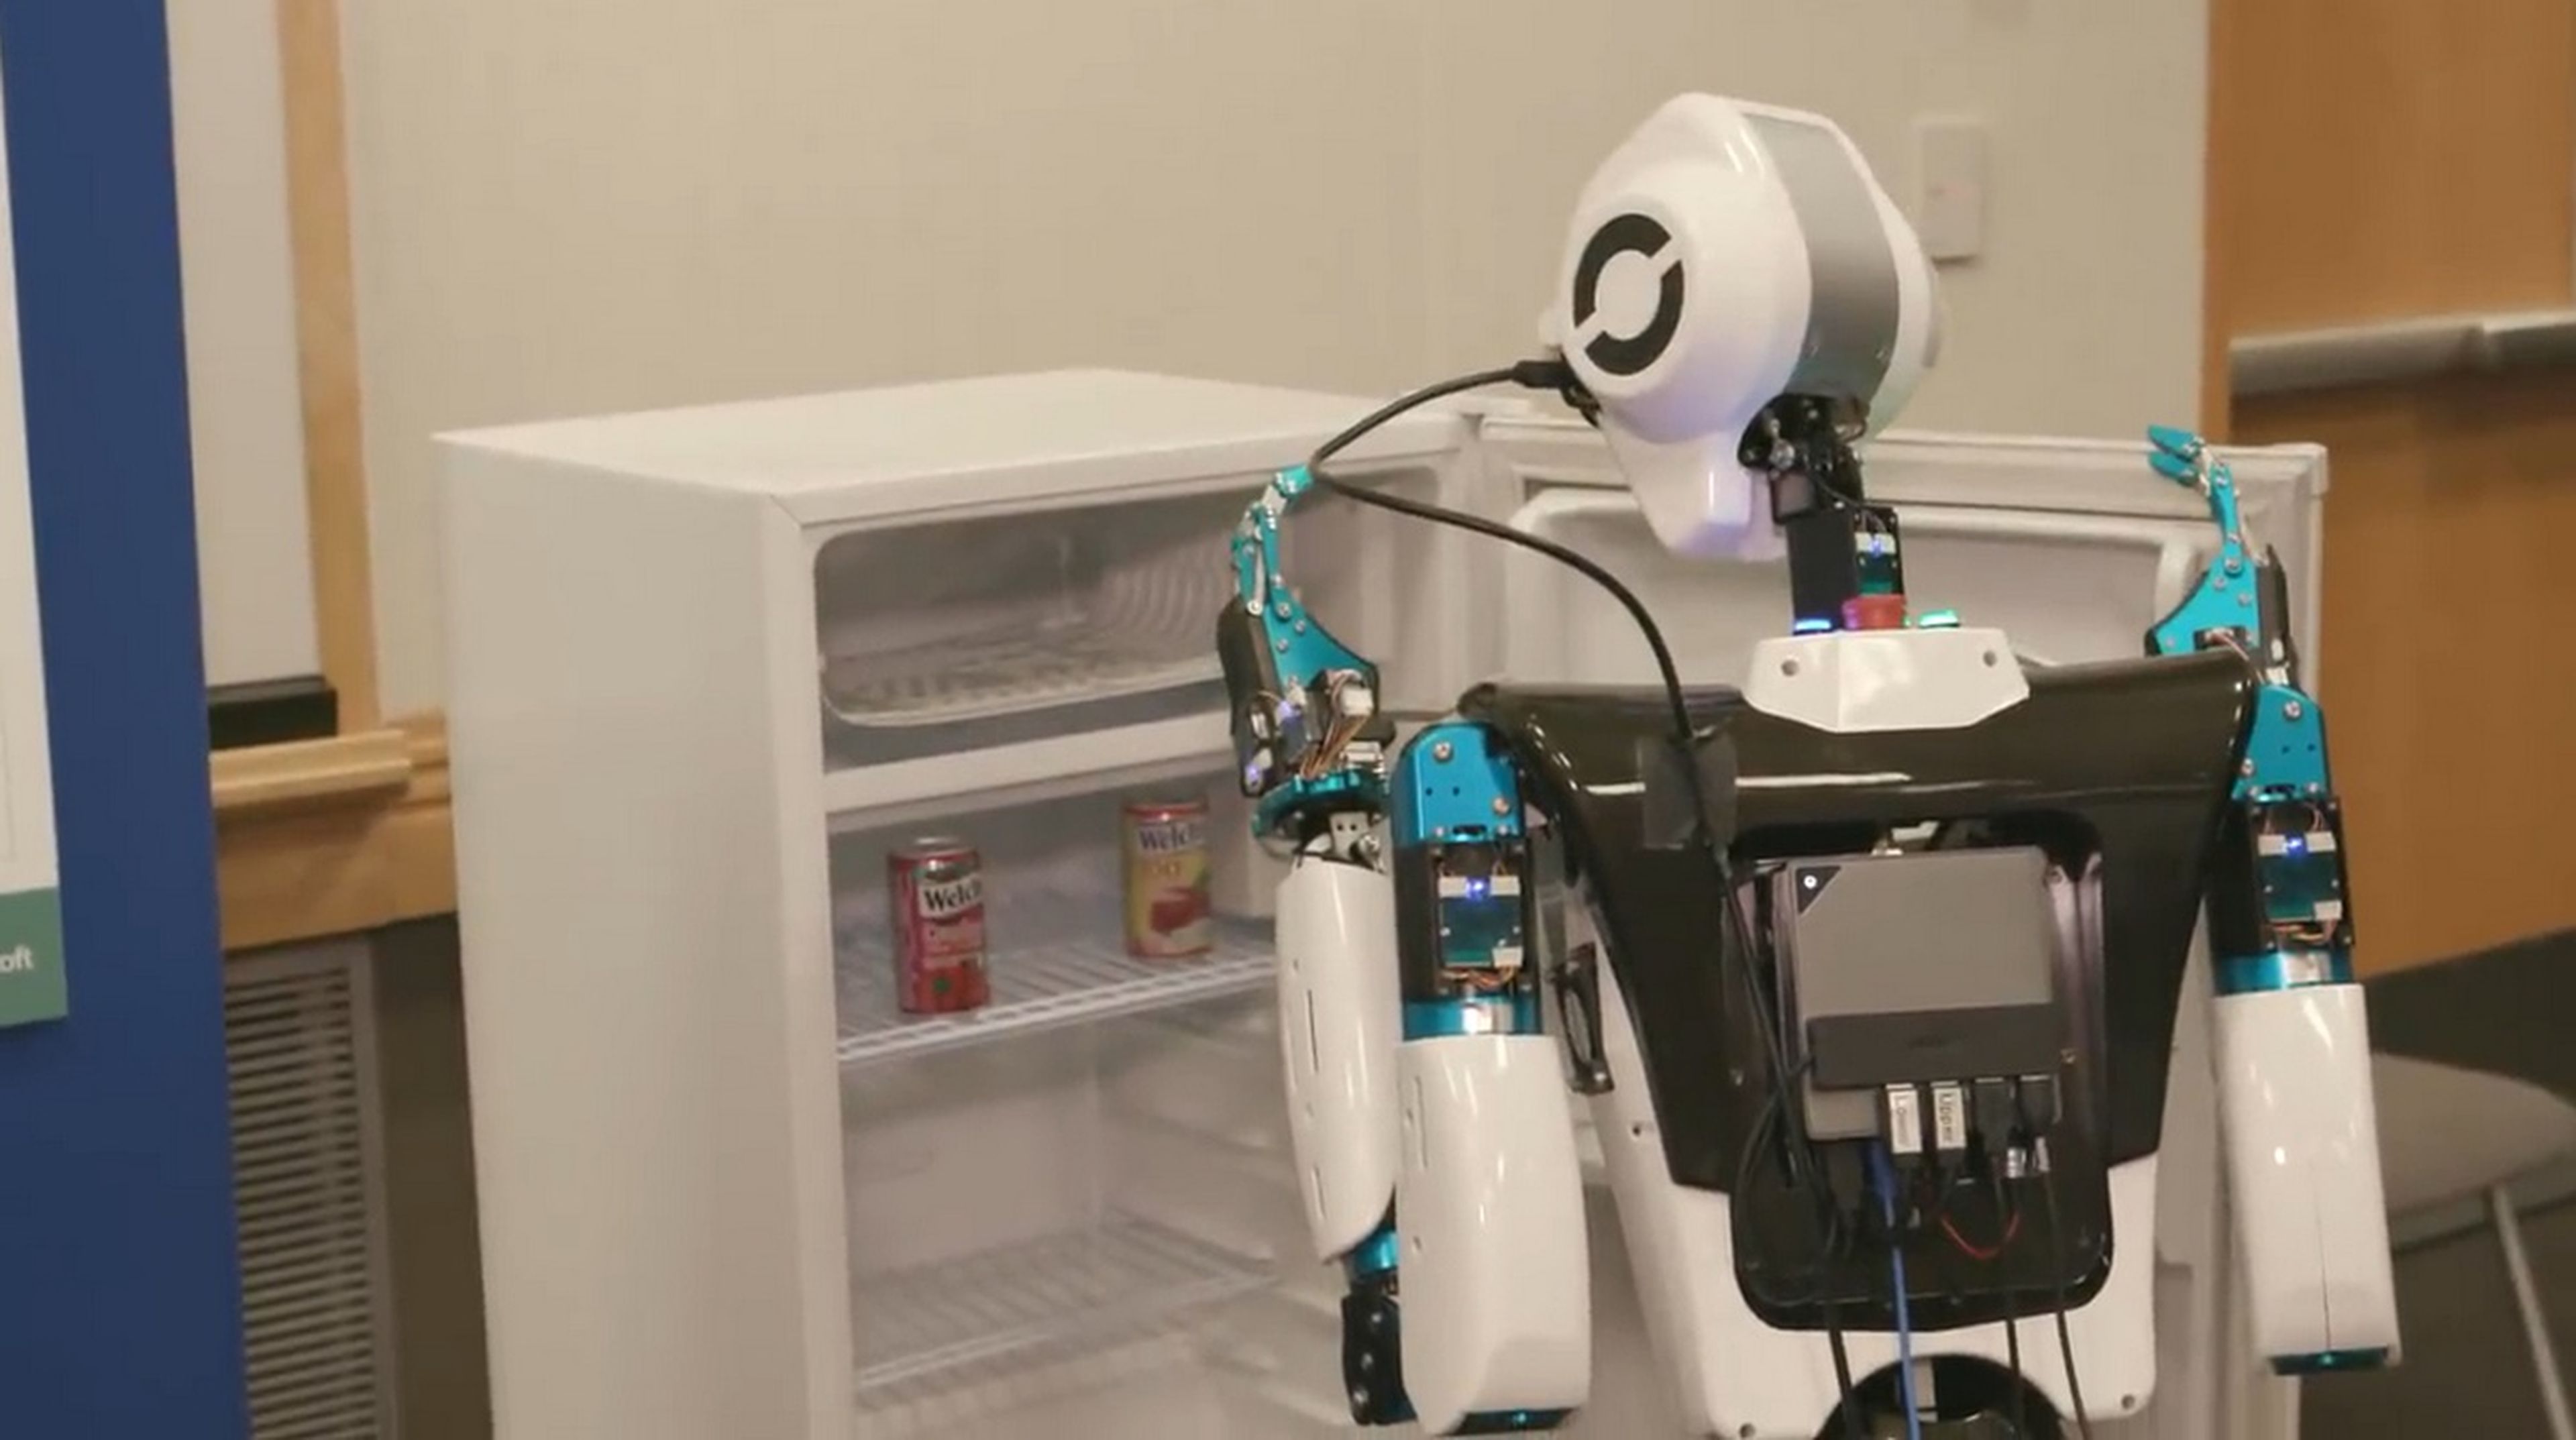 Estos son los robots que nos gustan, diseñados para servirte una cerveza de la nevera